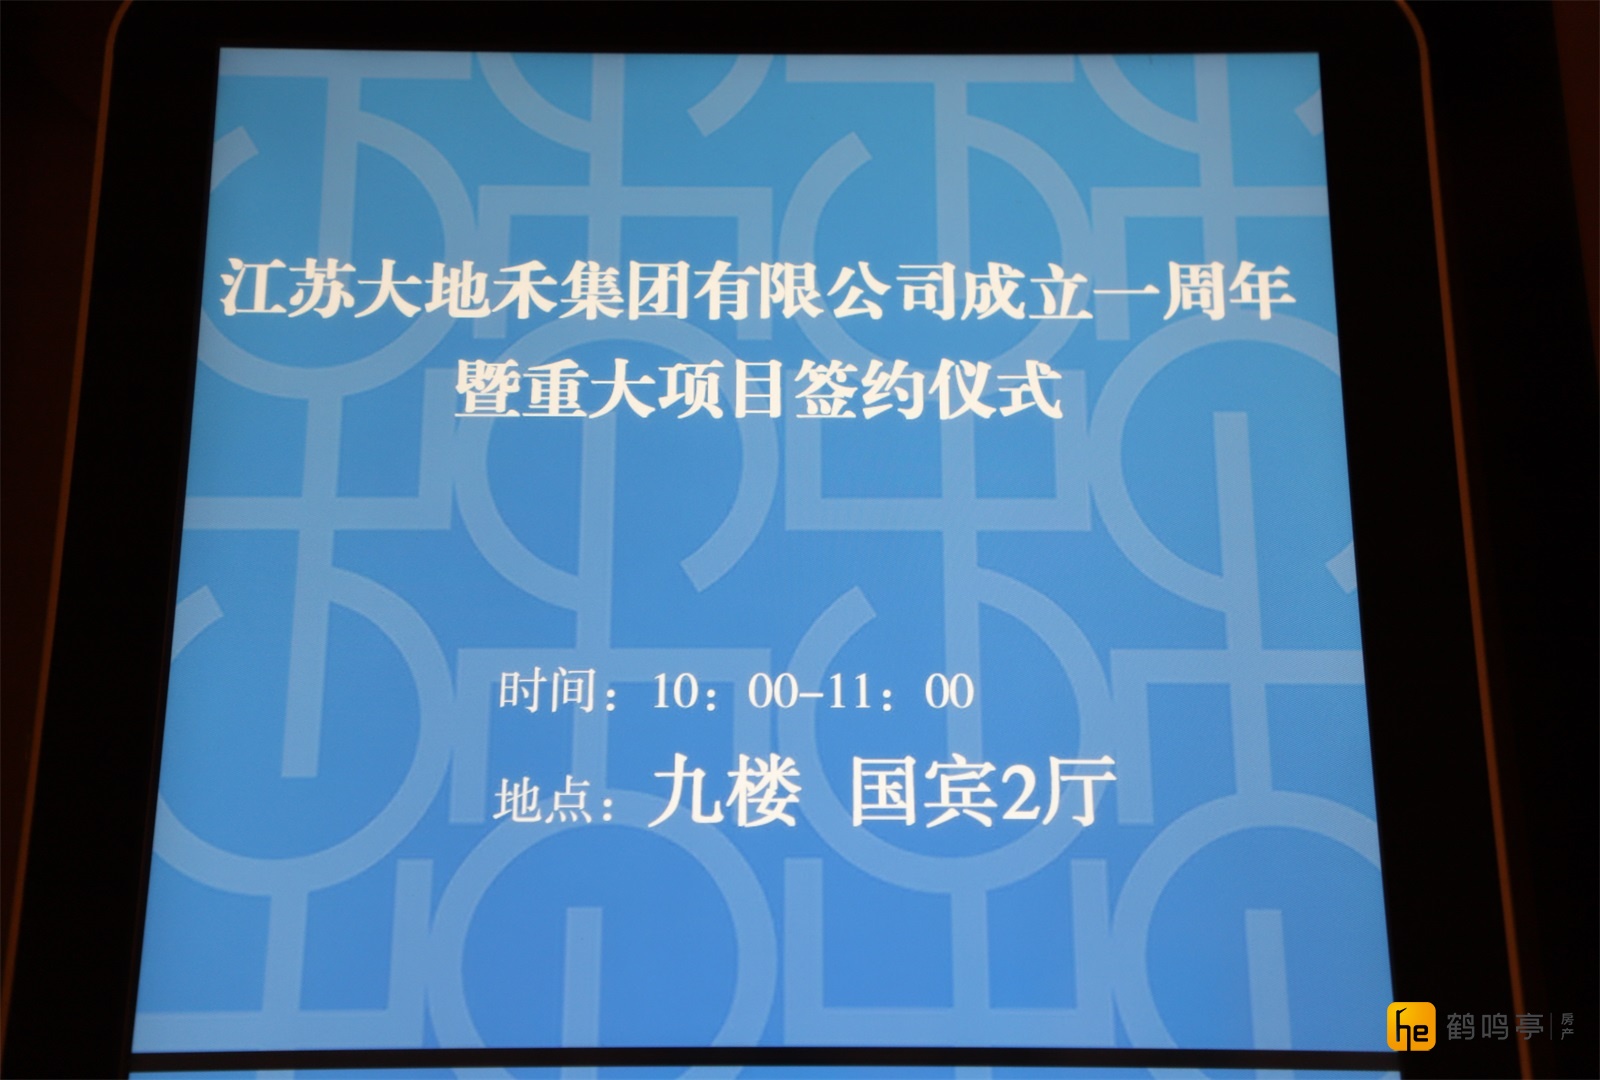 江苏大地禾集团有限公司成立一周年庆典 暨重大项目集中签约仪式